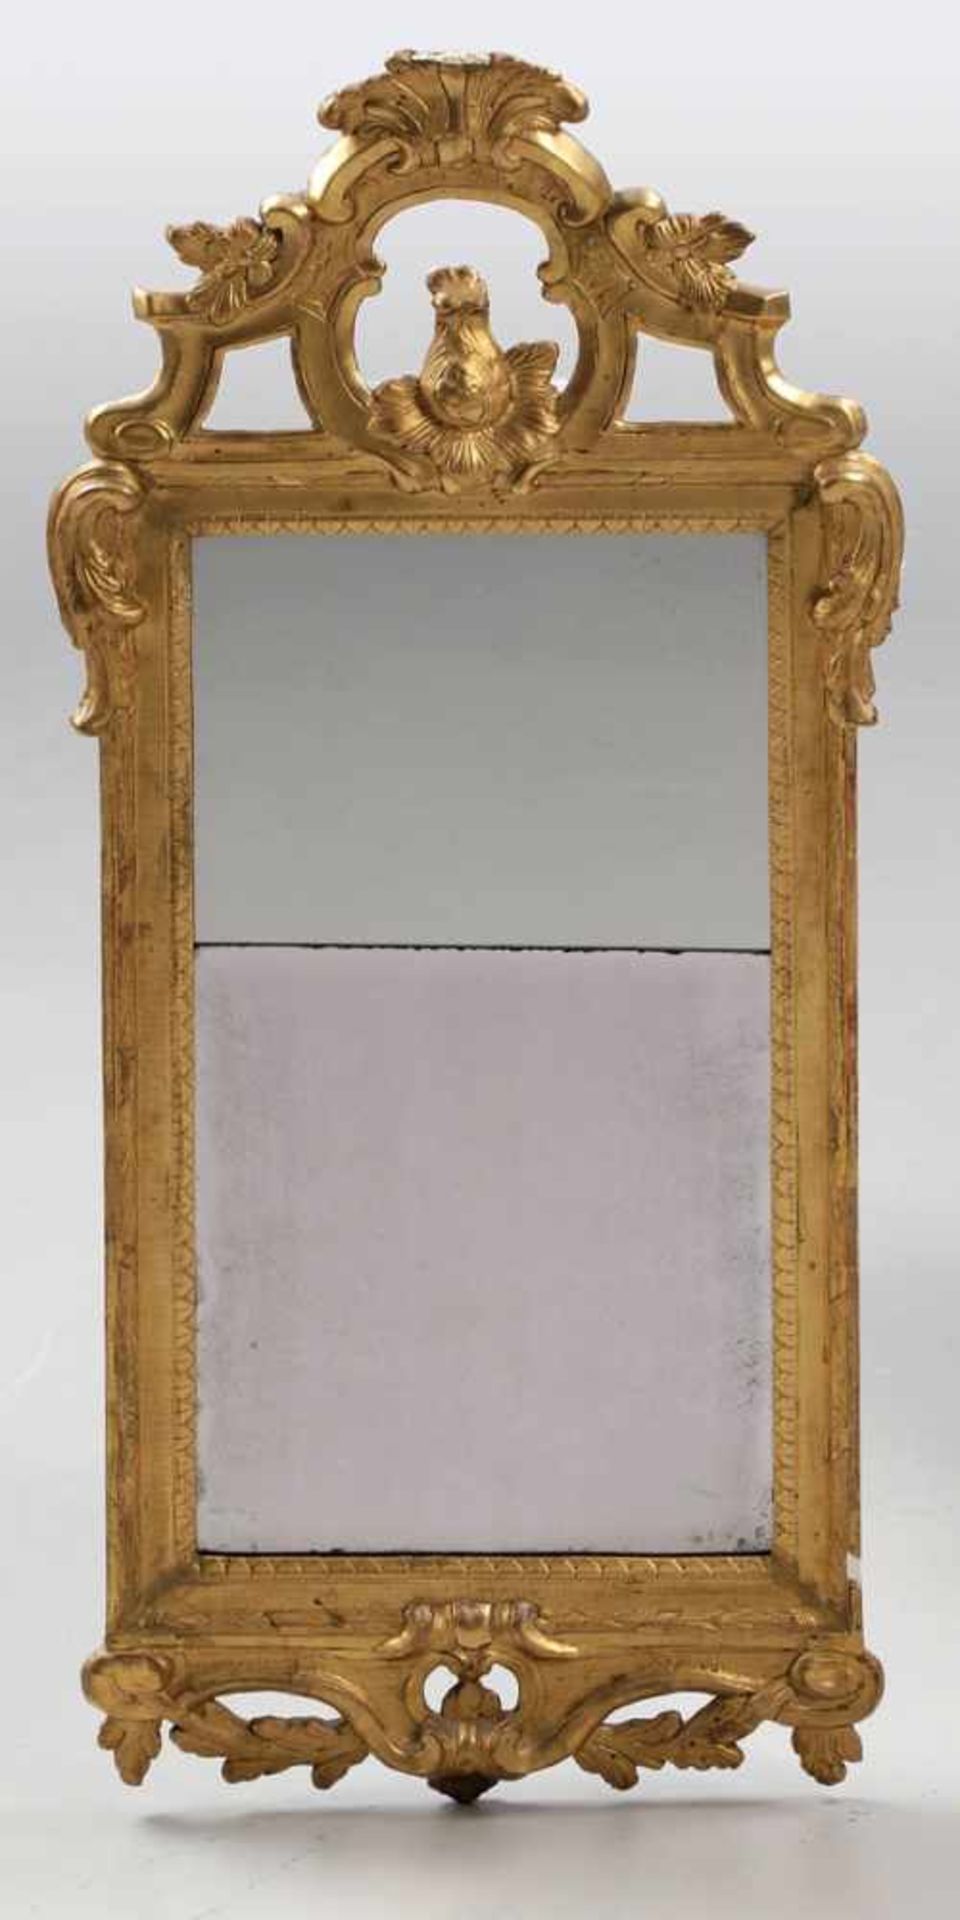 Barock-Spiegel Um 1800. Holz, gefasst. 105 x 42,5 x 3,5 cm. Best. Verziert mit Blüten-, Muschel- und